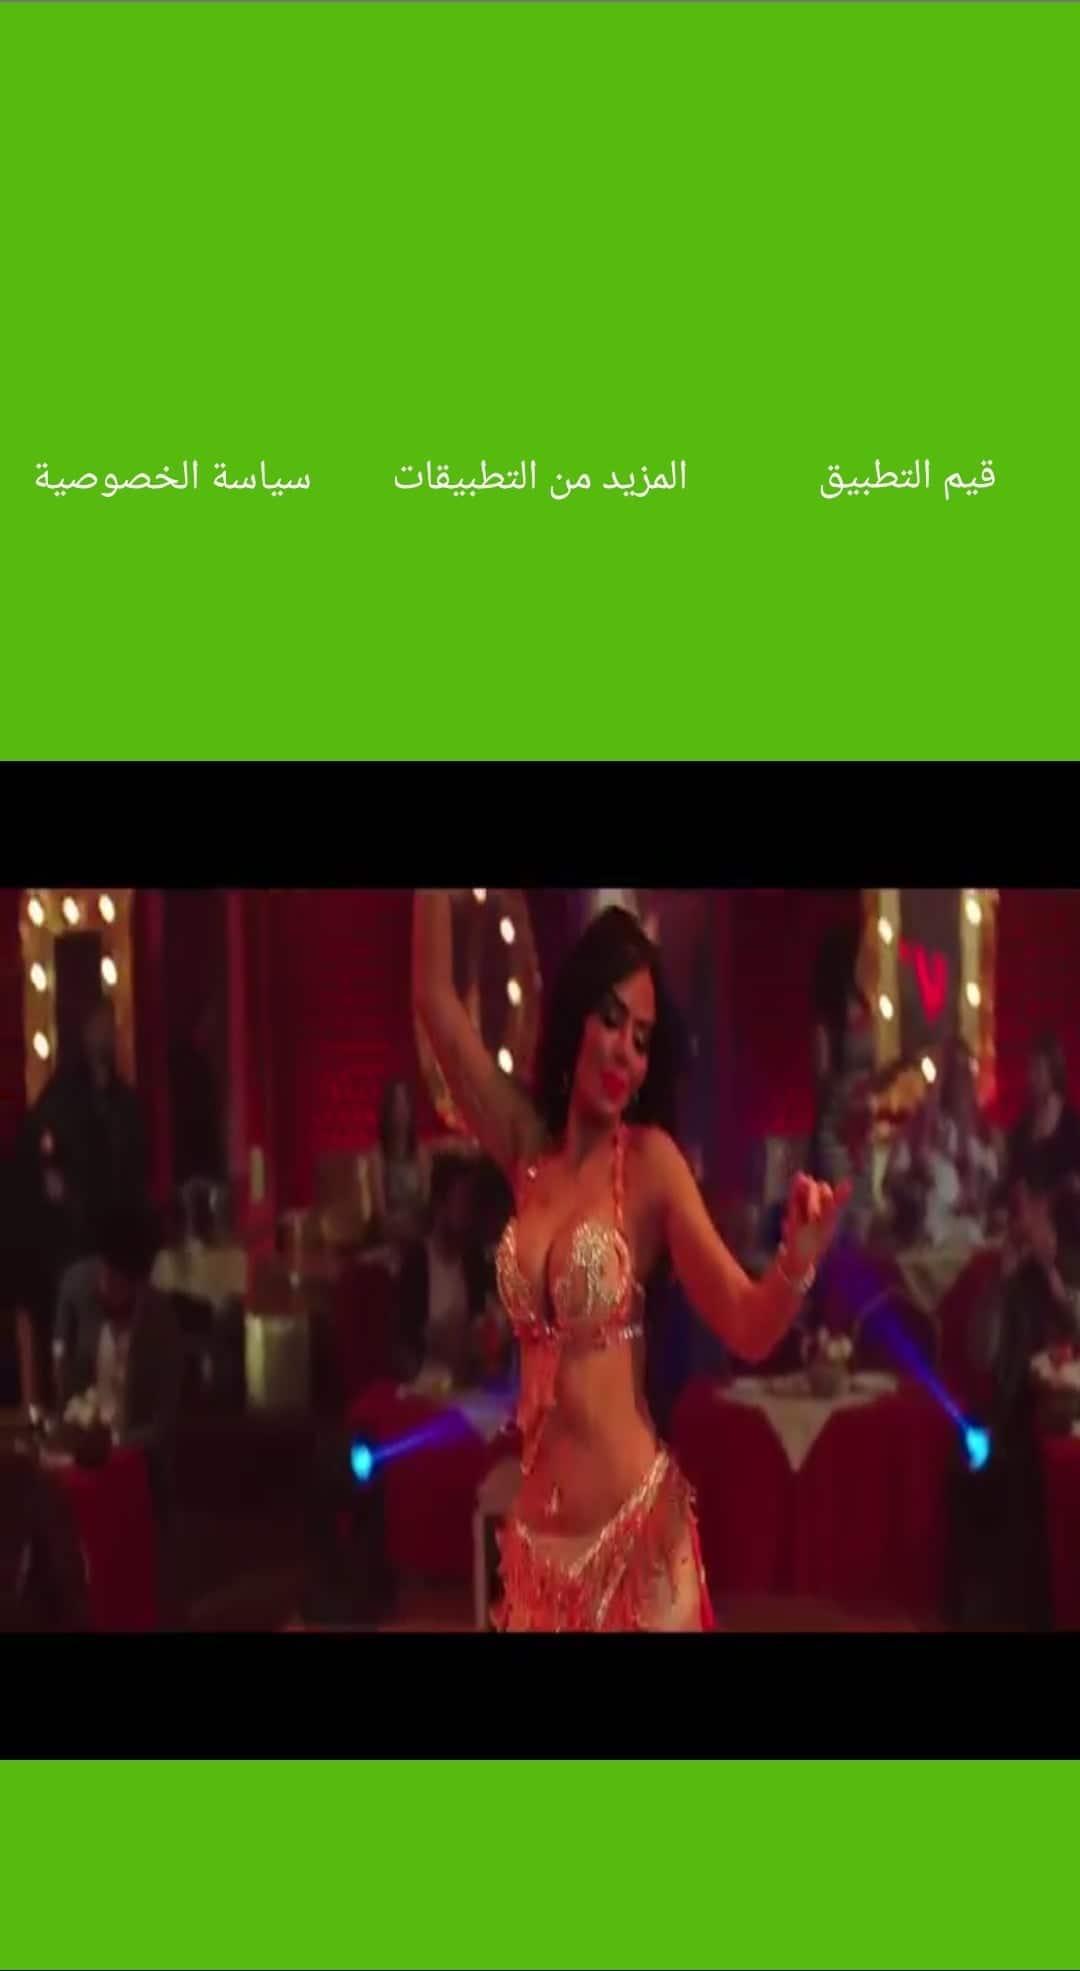 مهرجان السبقانة كسبانة | أغنية فيلم ولاد رزق 2 for Android - APK Download